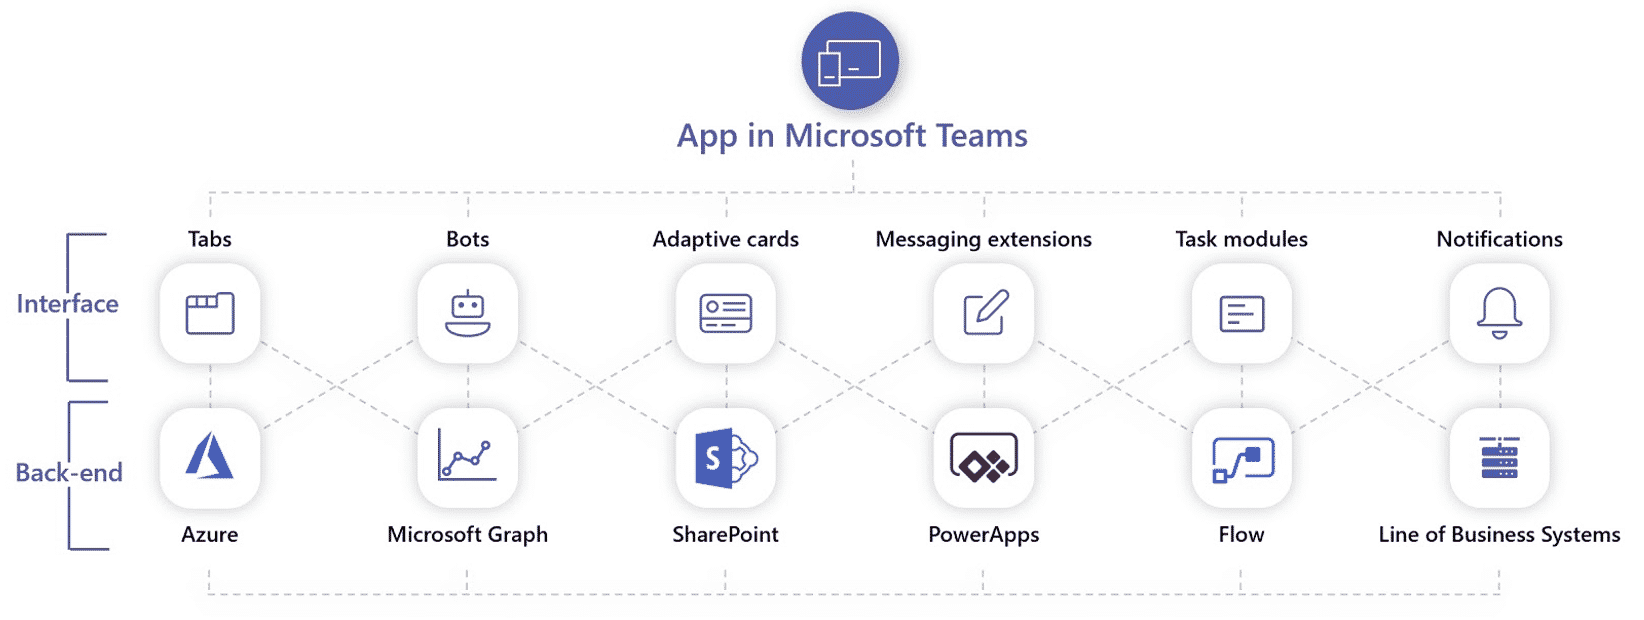 ms teams - an enterprise platform